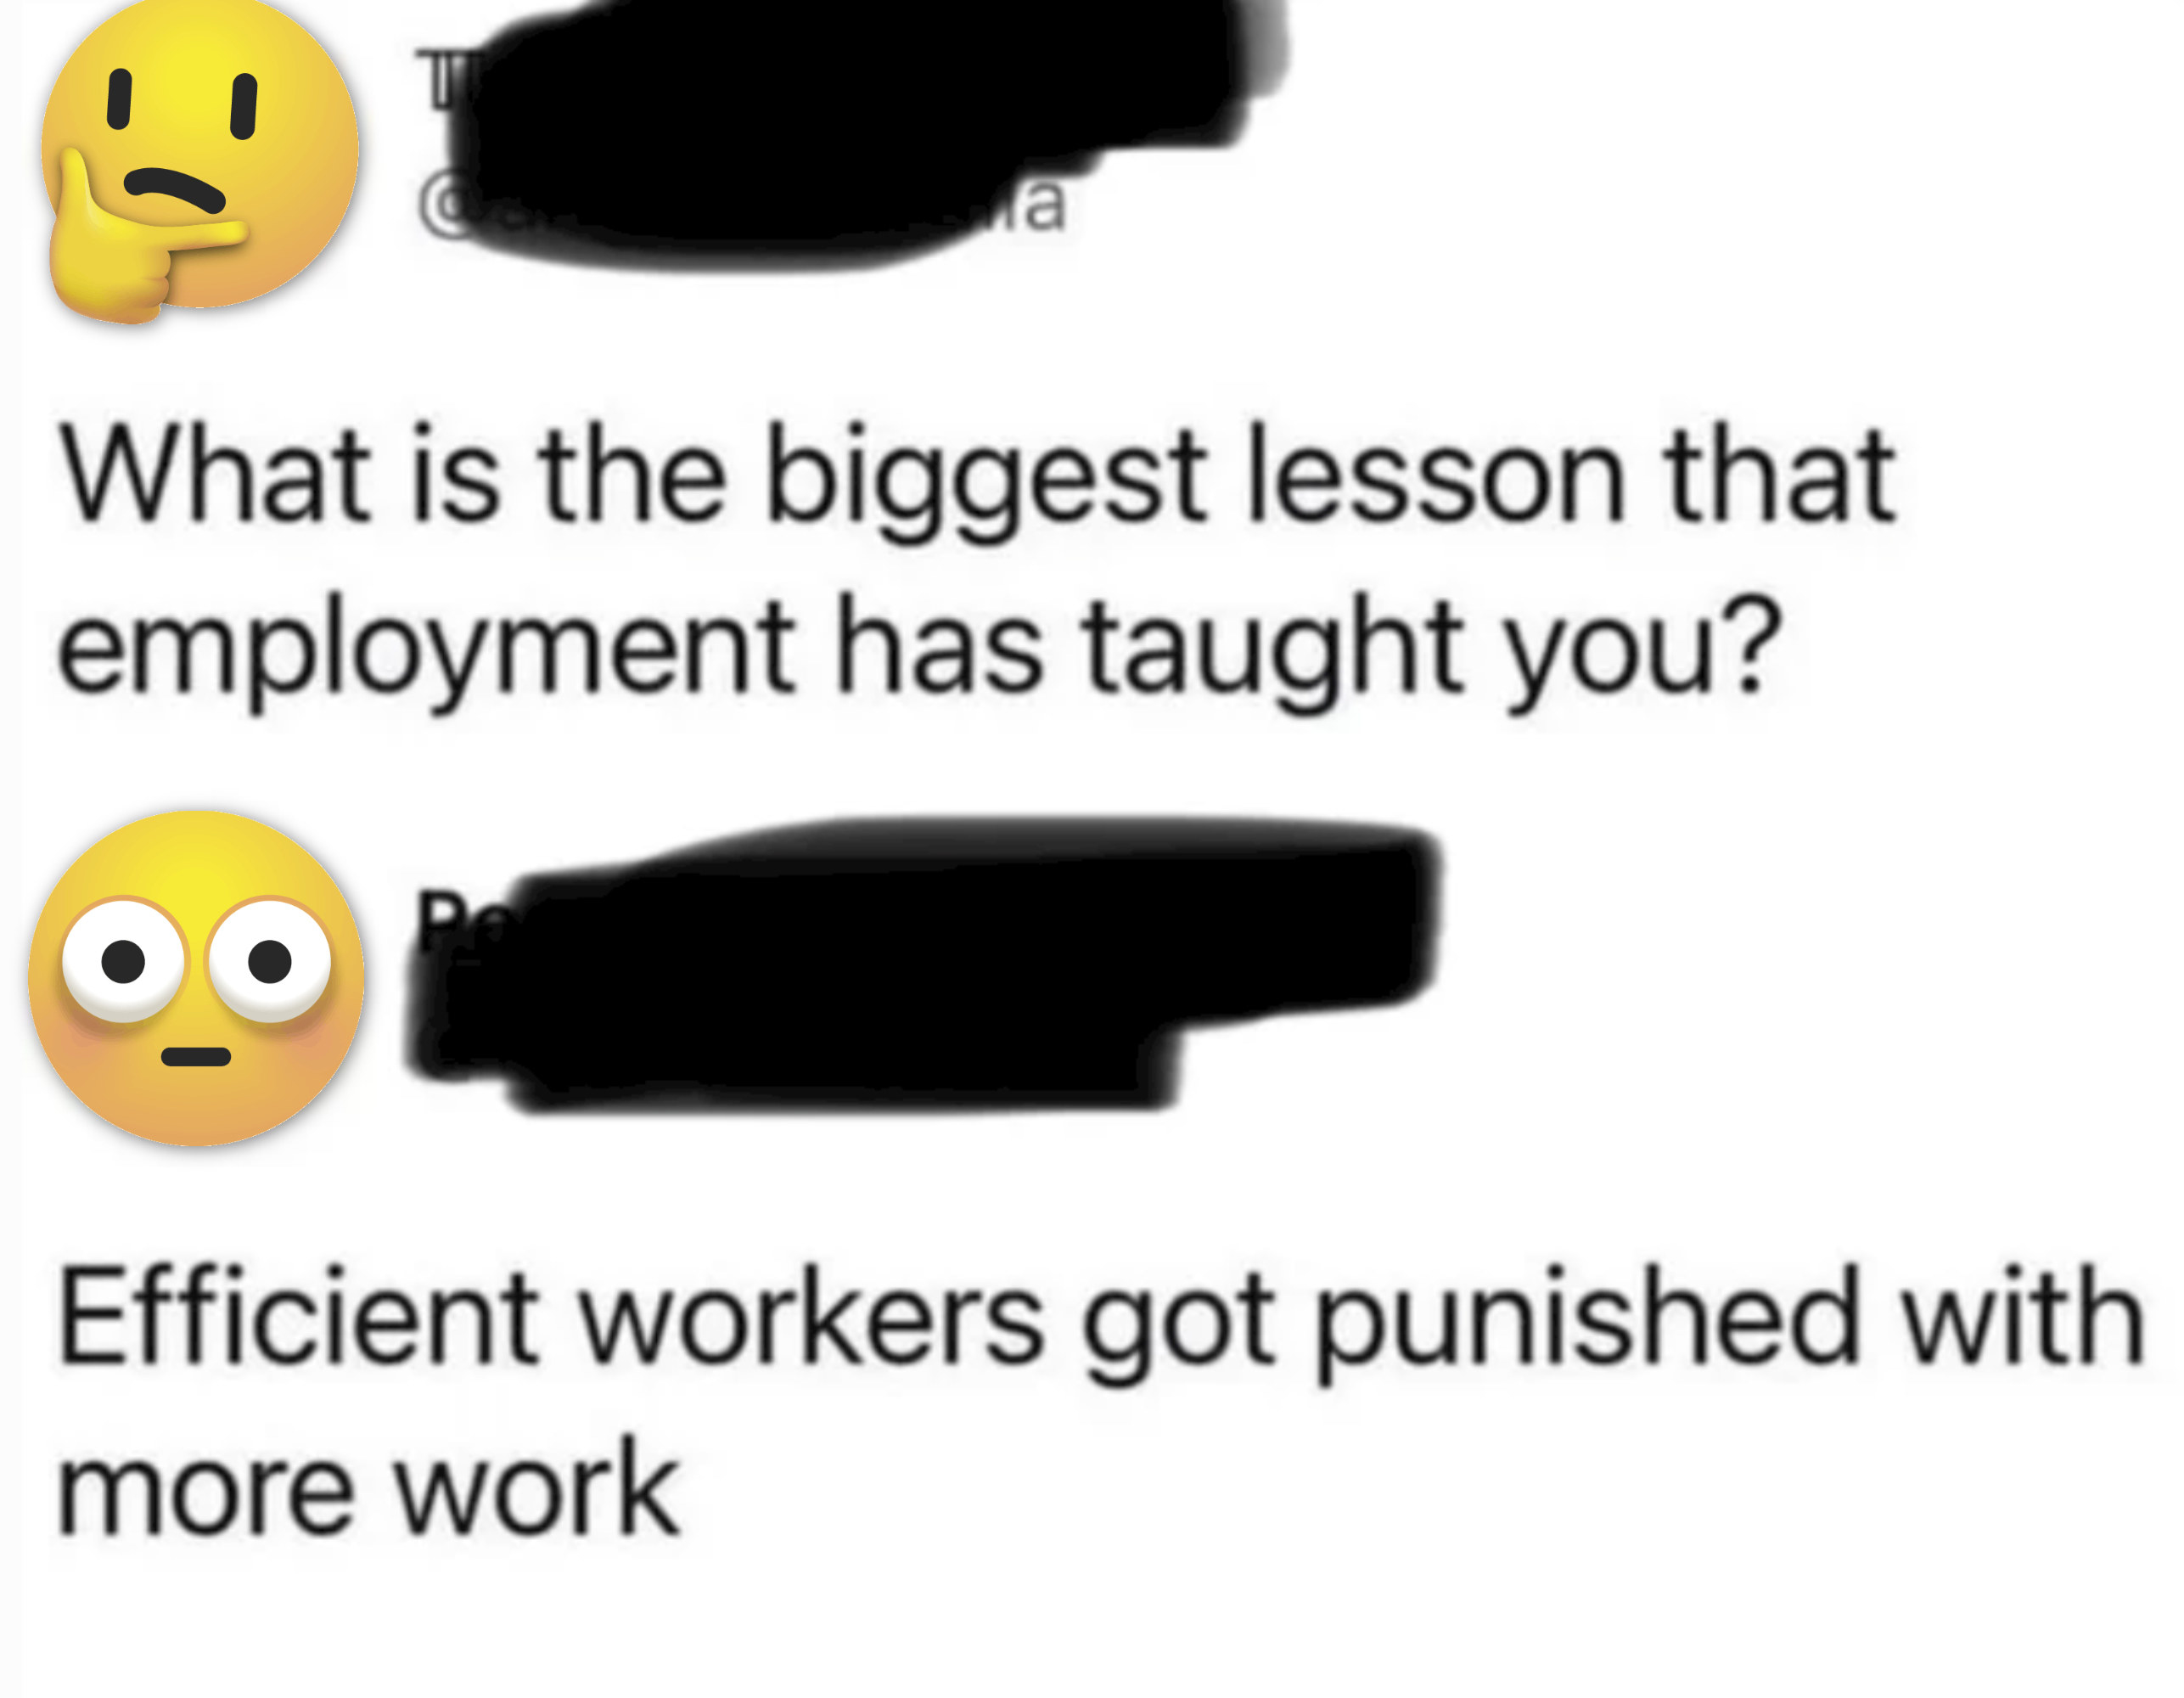 最大的课程就教导的是，有效的工人受到更多工作的惩罚